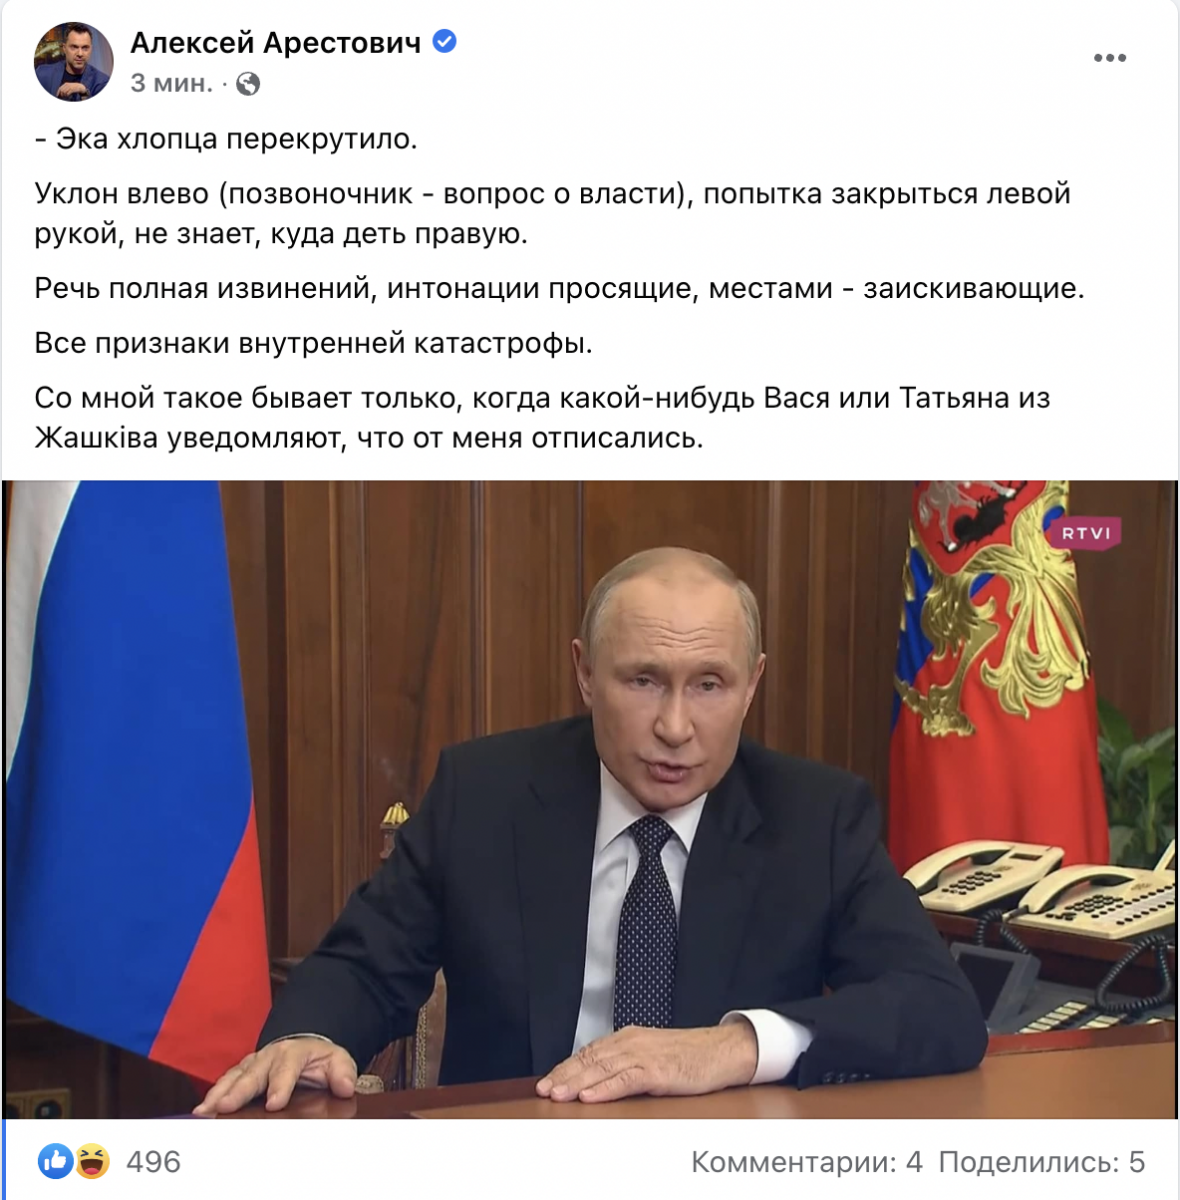 'Як хлопця перекрутило': Арестович вказав на ознаки 'внутрішньої катастрофи' в мові тіла Путіна